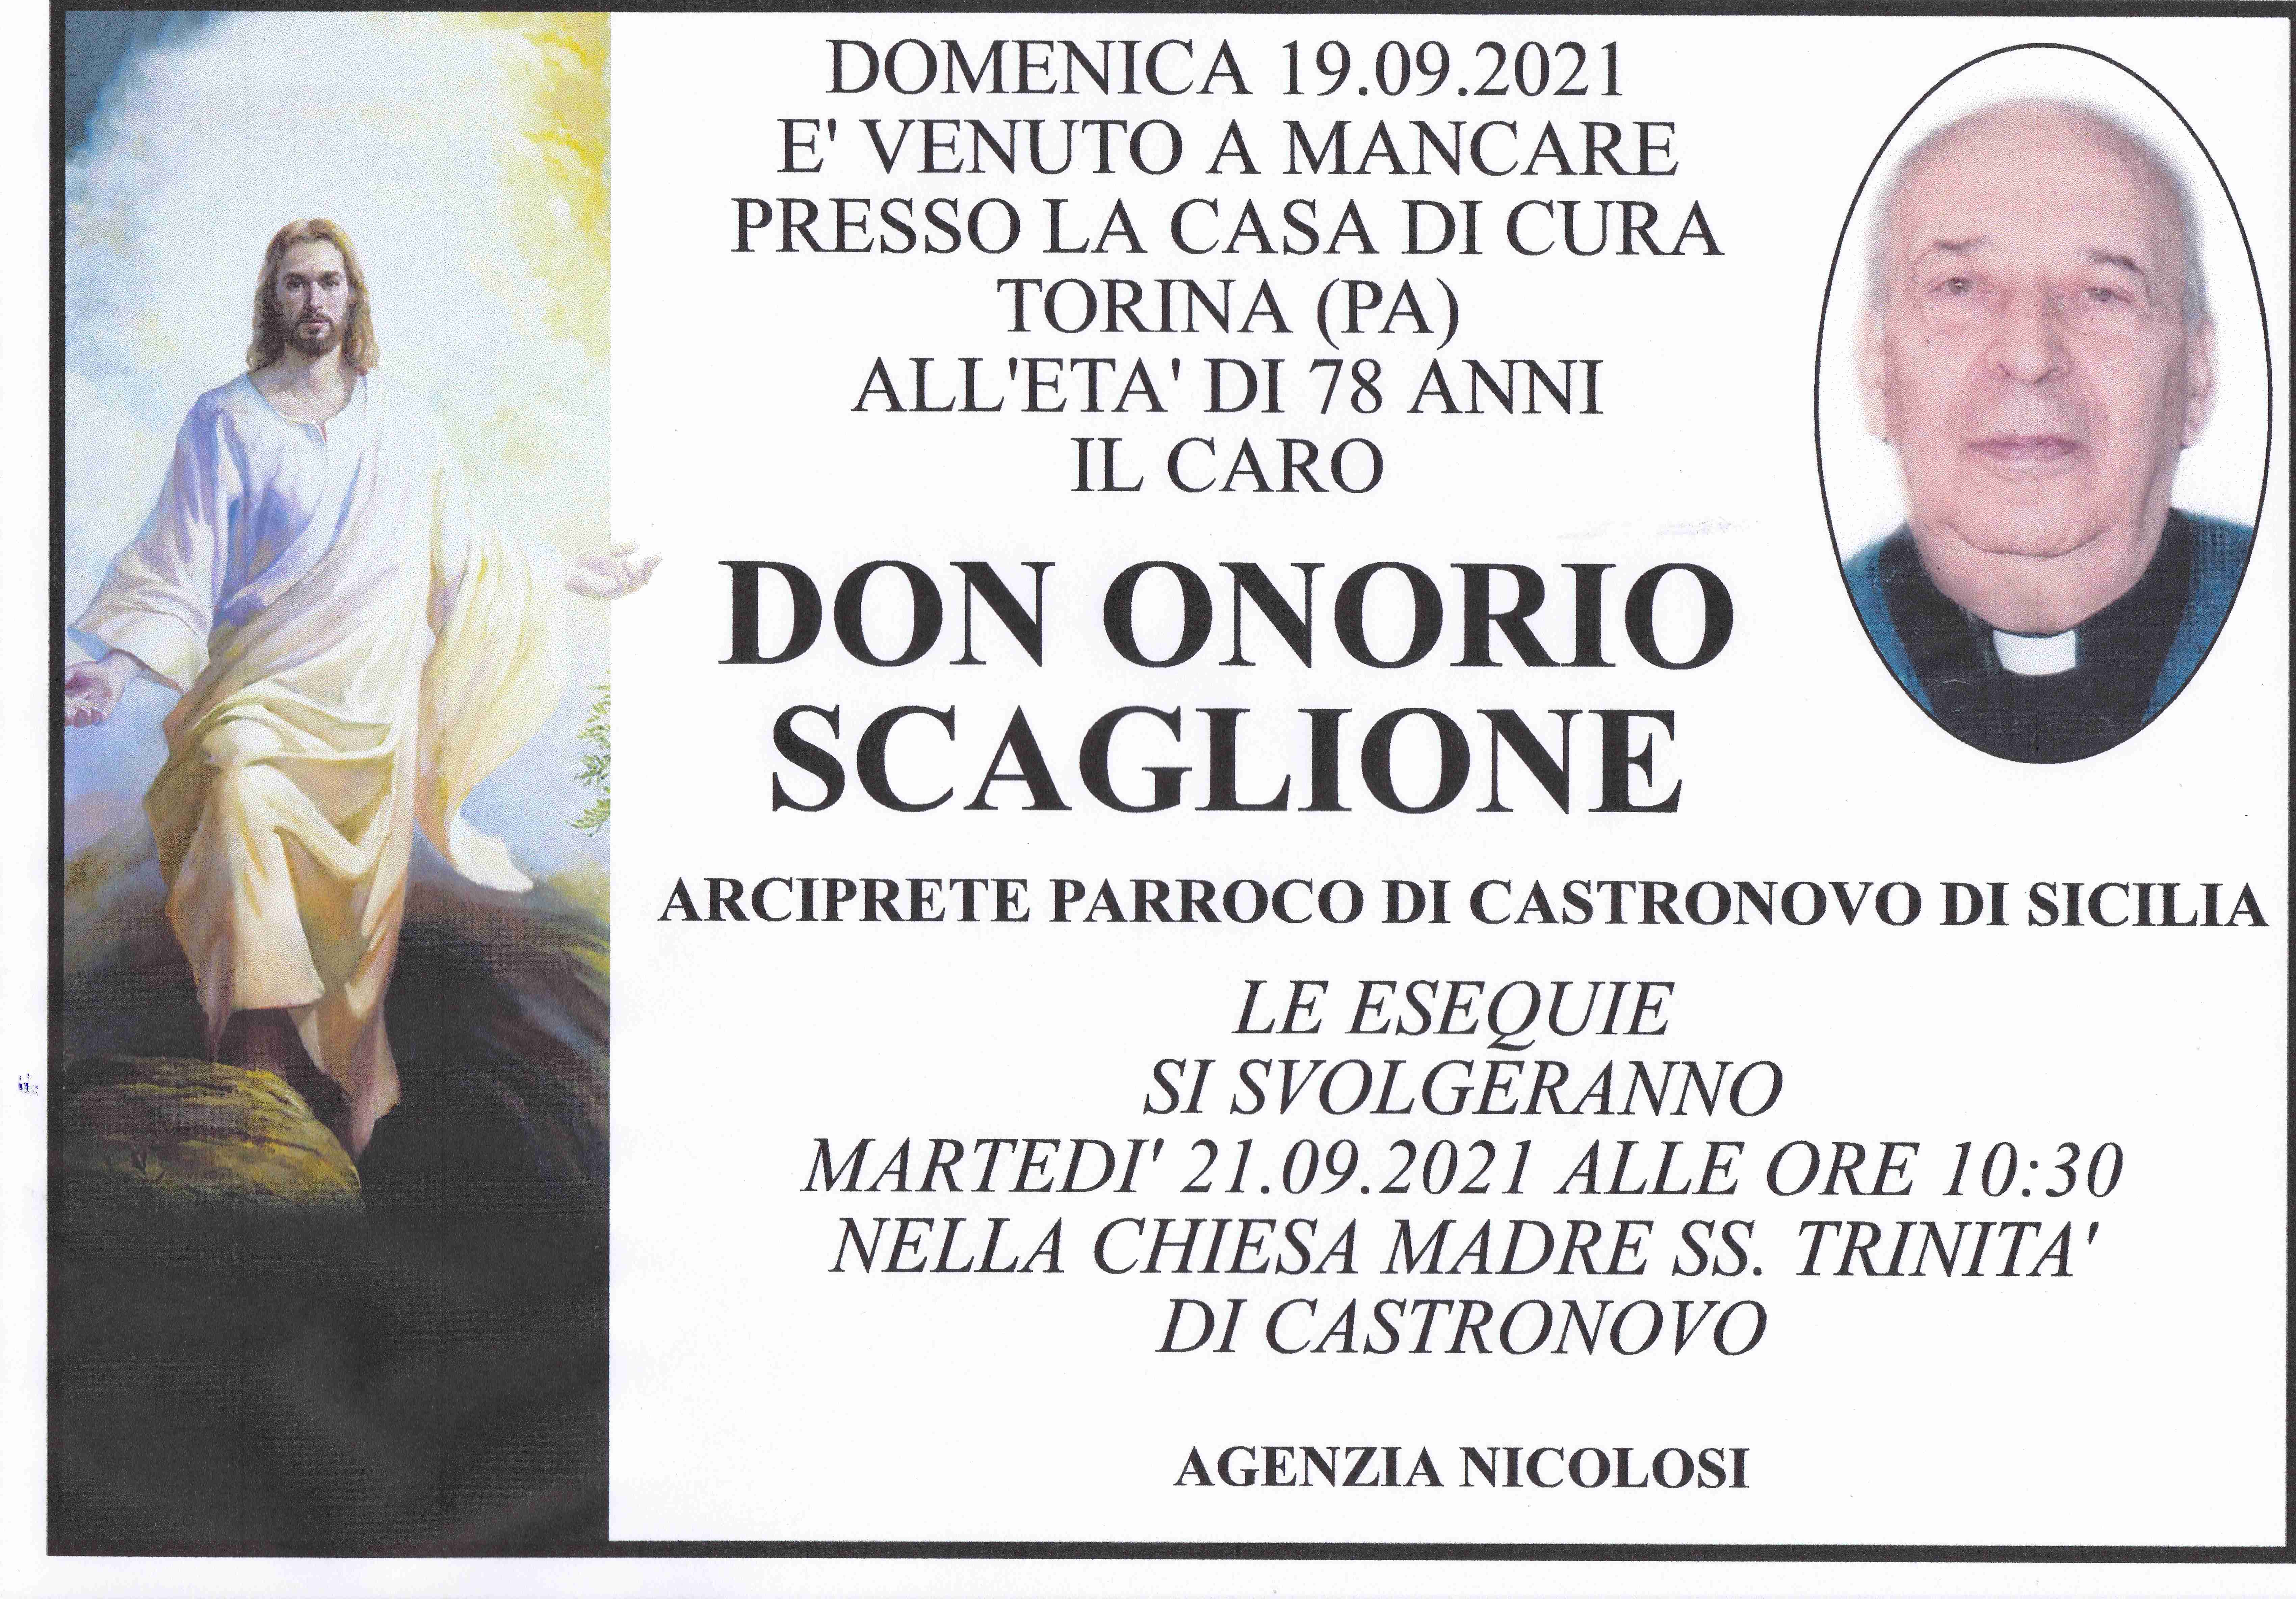 Don Onorio Scaglione